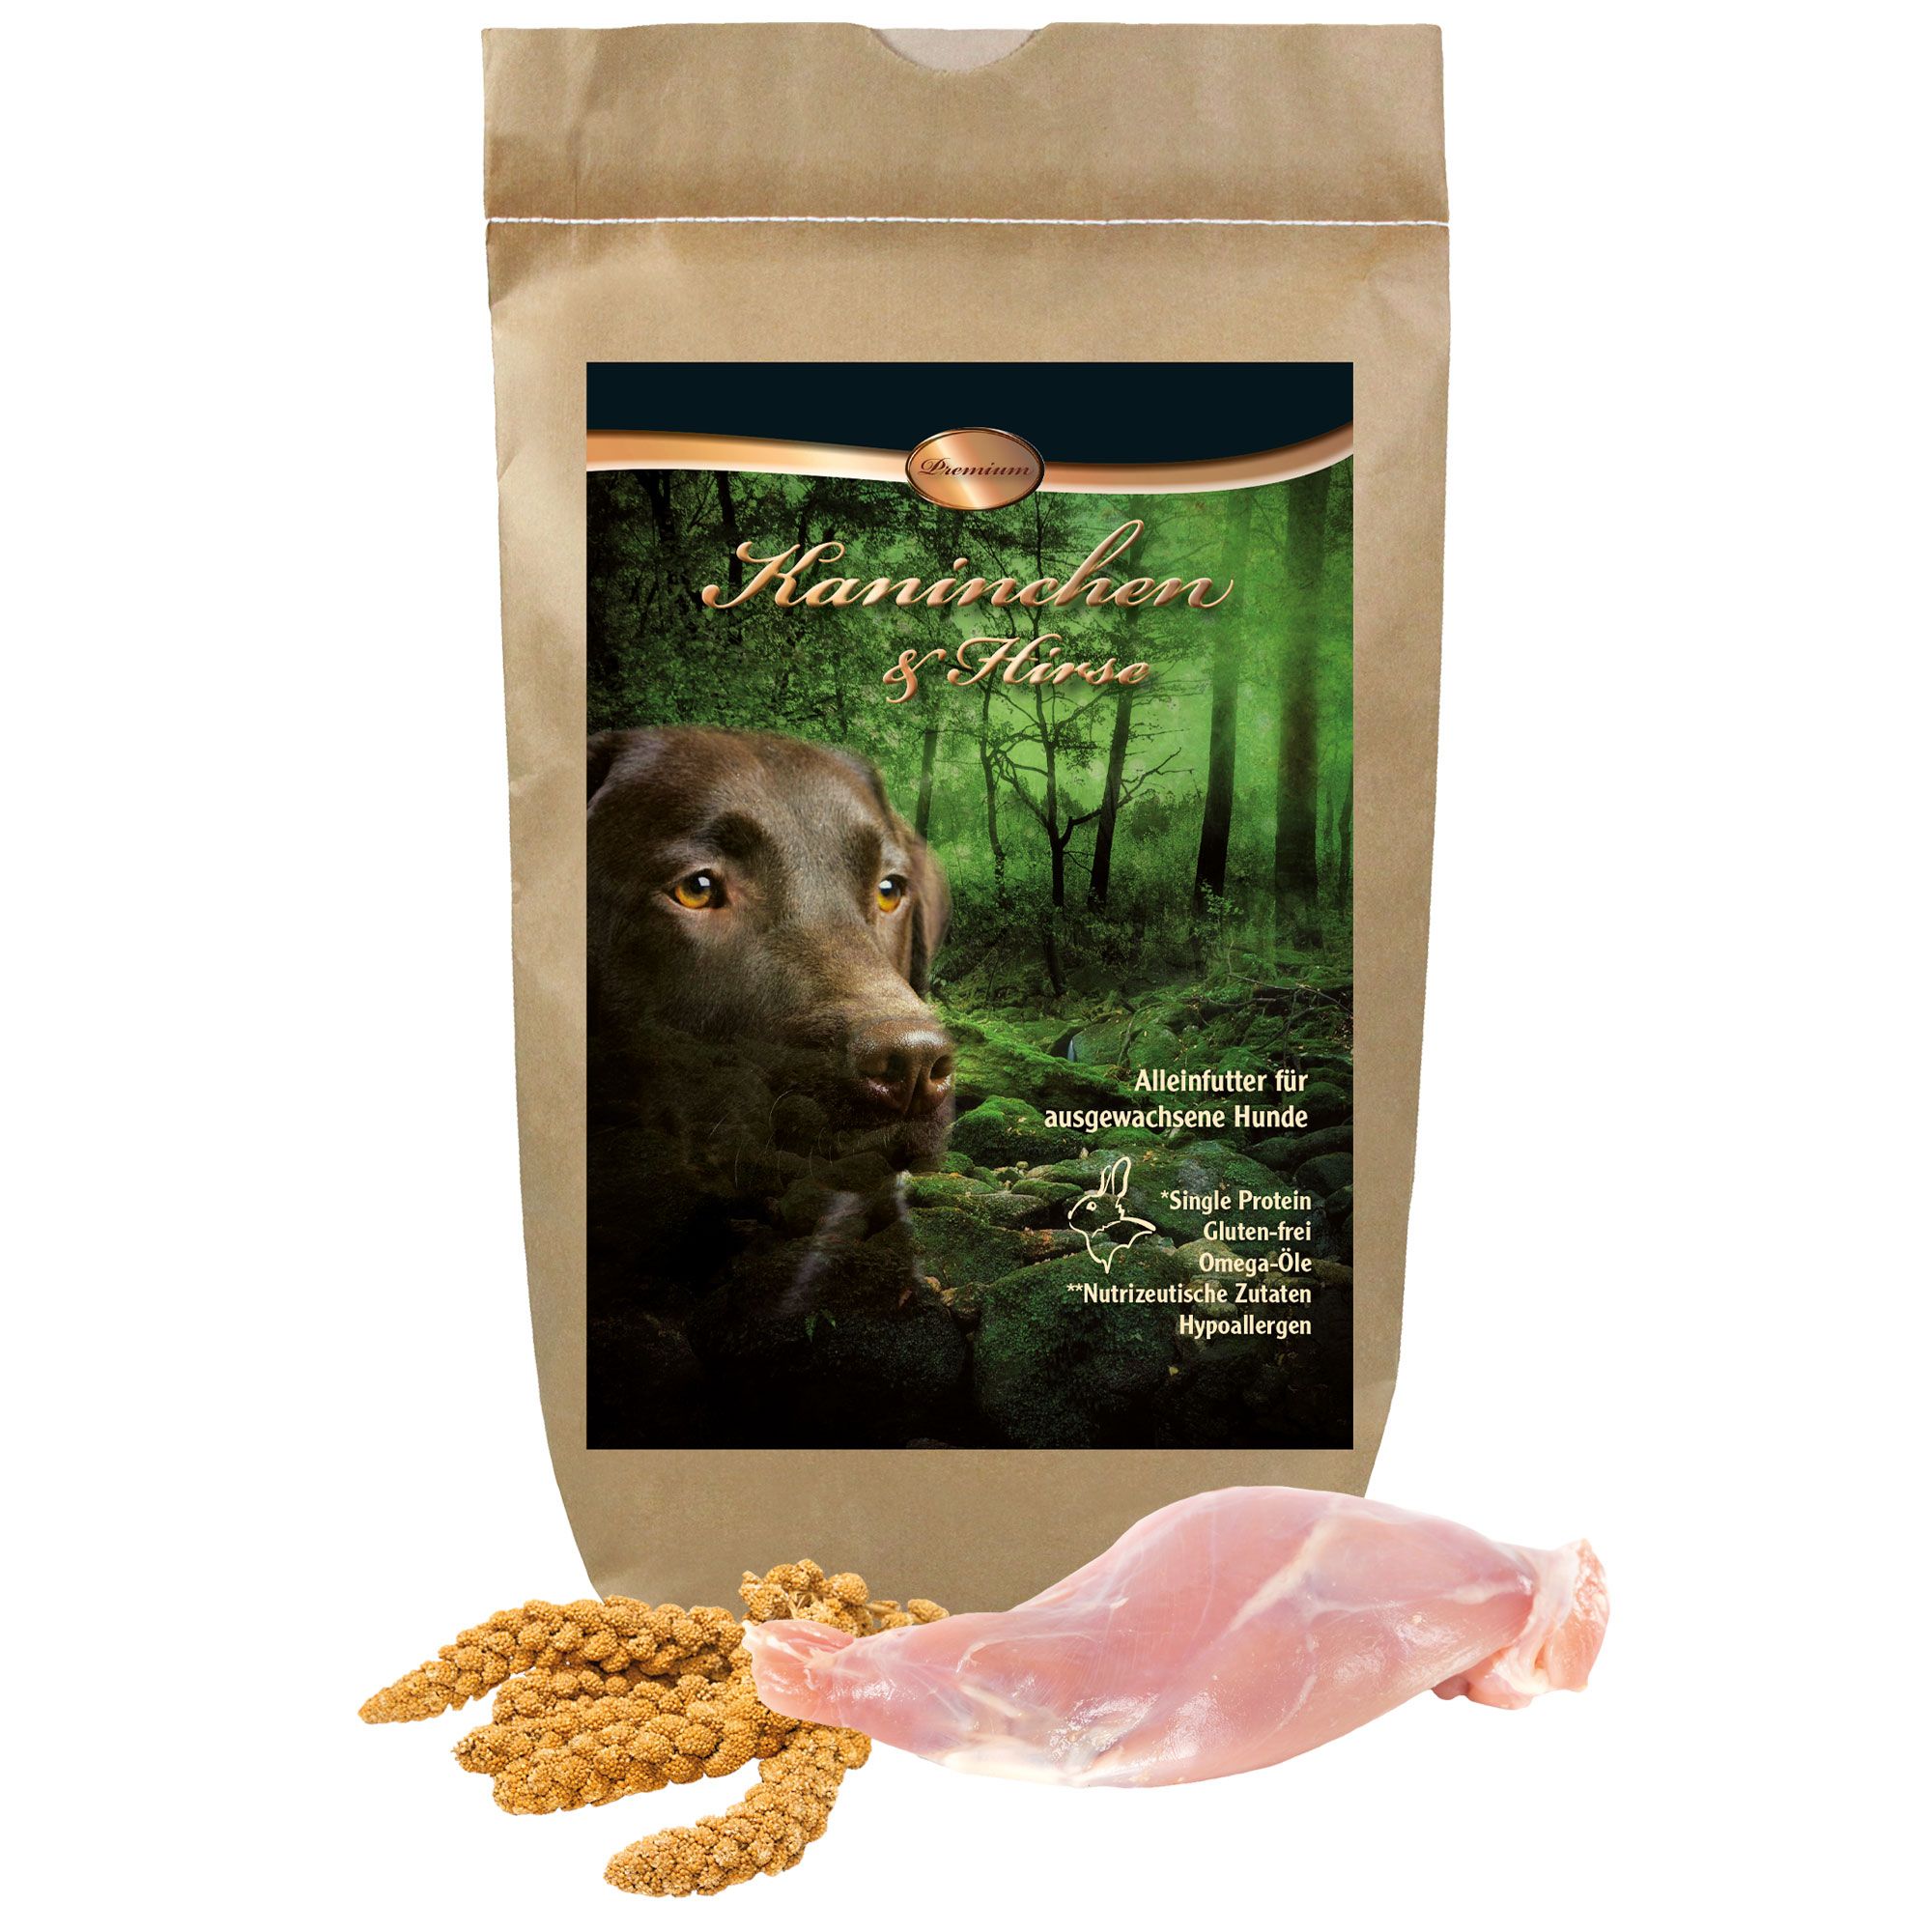 Schecker Trockenfutter Kaninchen u Hirse Premium - Single Protein - glutenfrei - hypoallergen